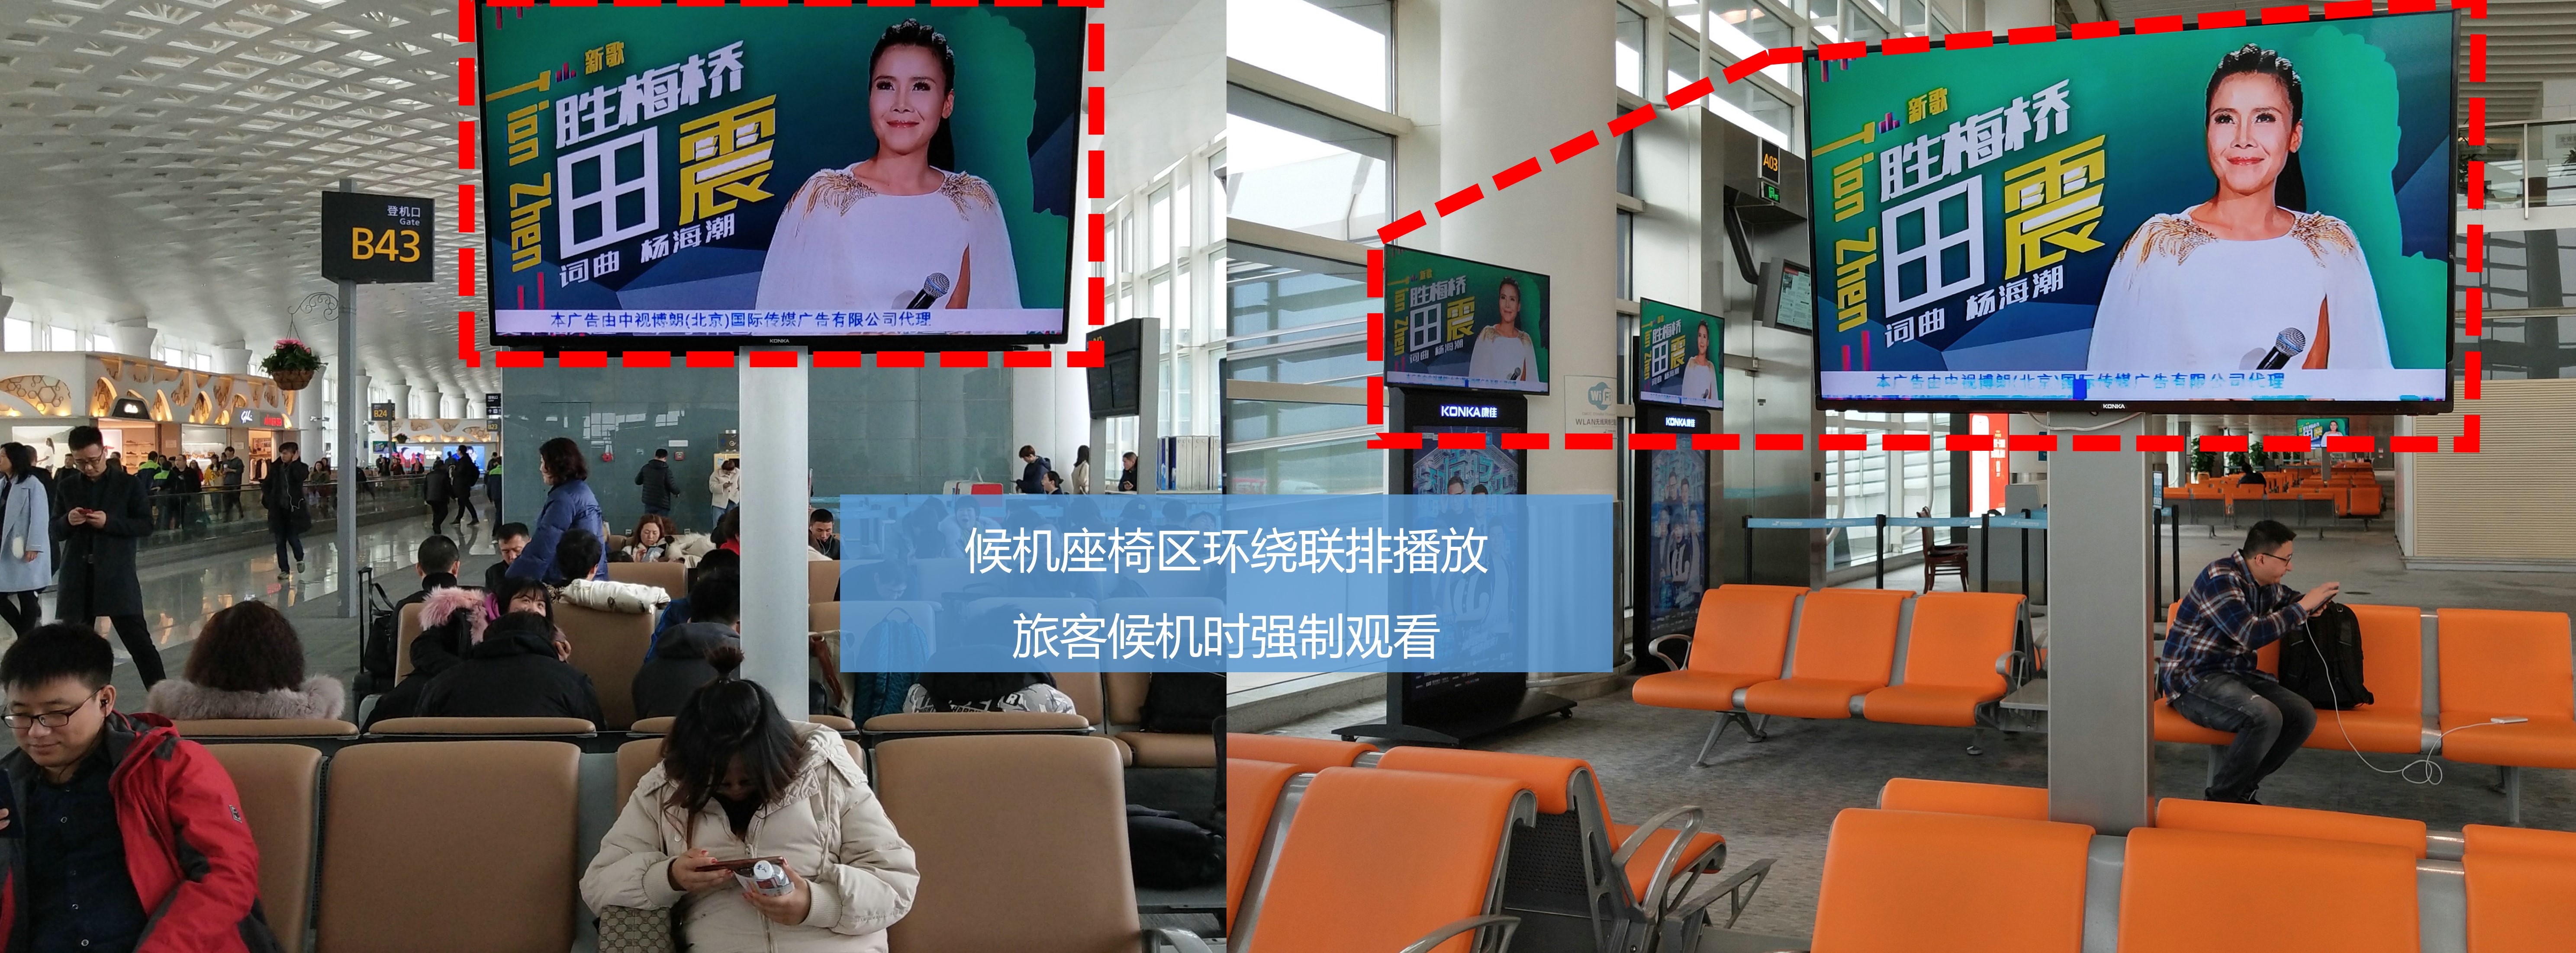 杭州萧山机场广告-T3出发全覆盖联排屏幕